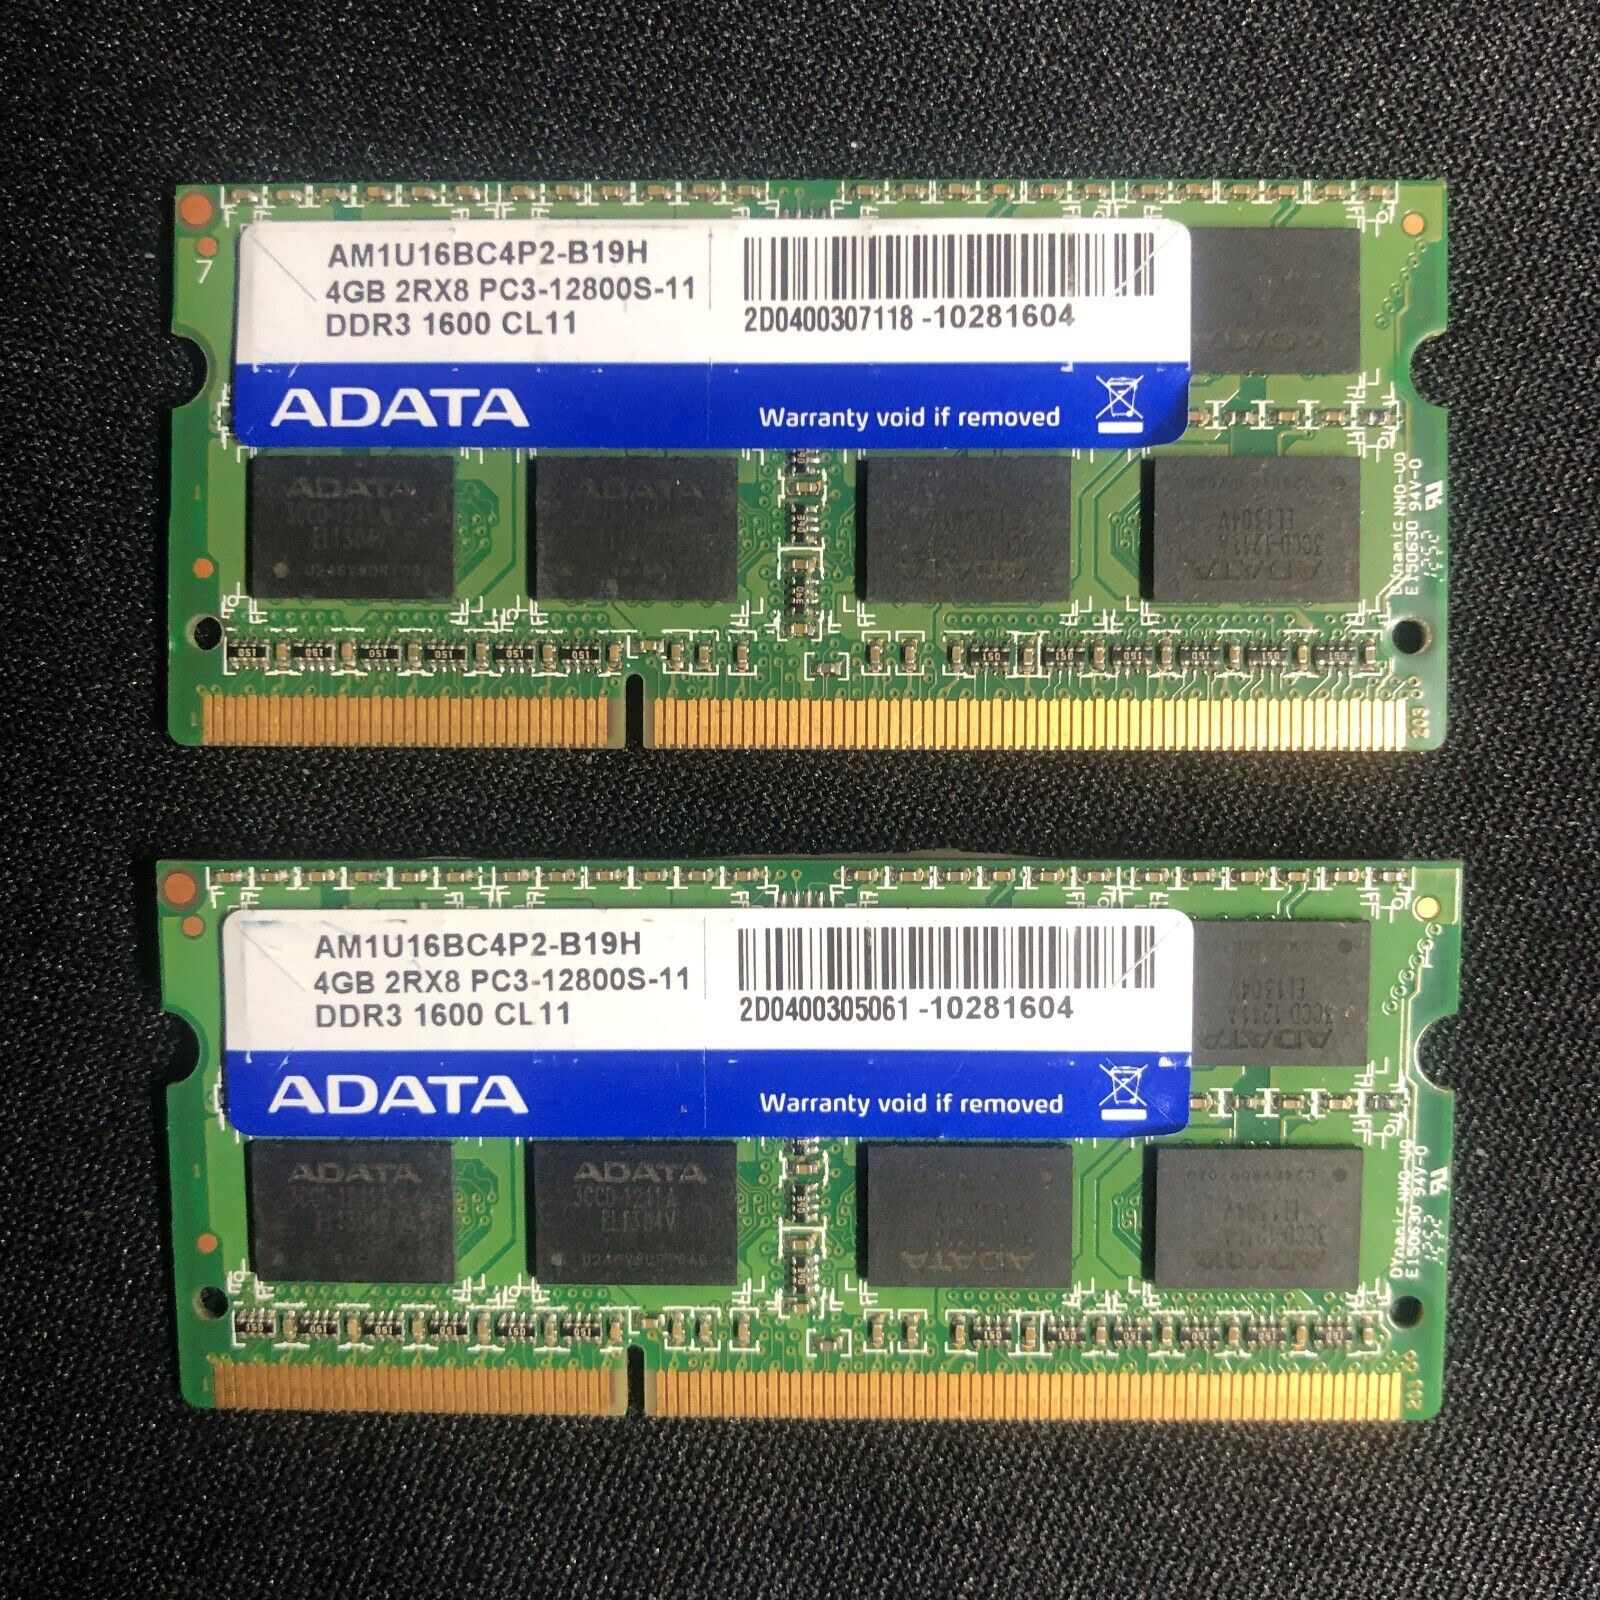 Lot of 2 ADATA 4GB PC3-12800S/DDR3 1600 SODIMM AM1U16BC4P2-B19H (Mac Compatible)